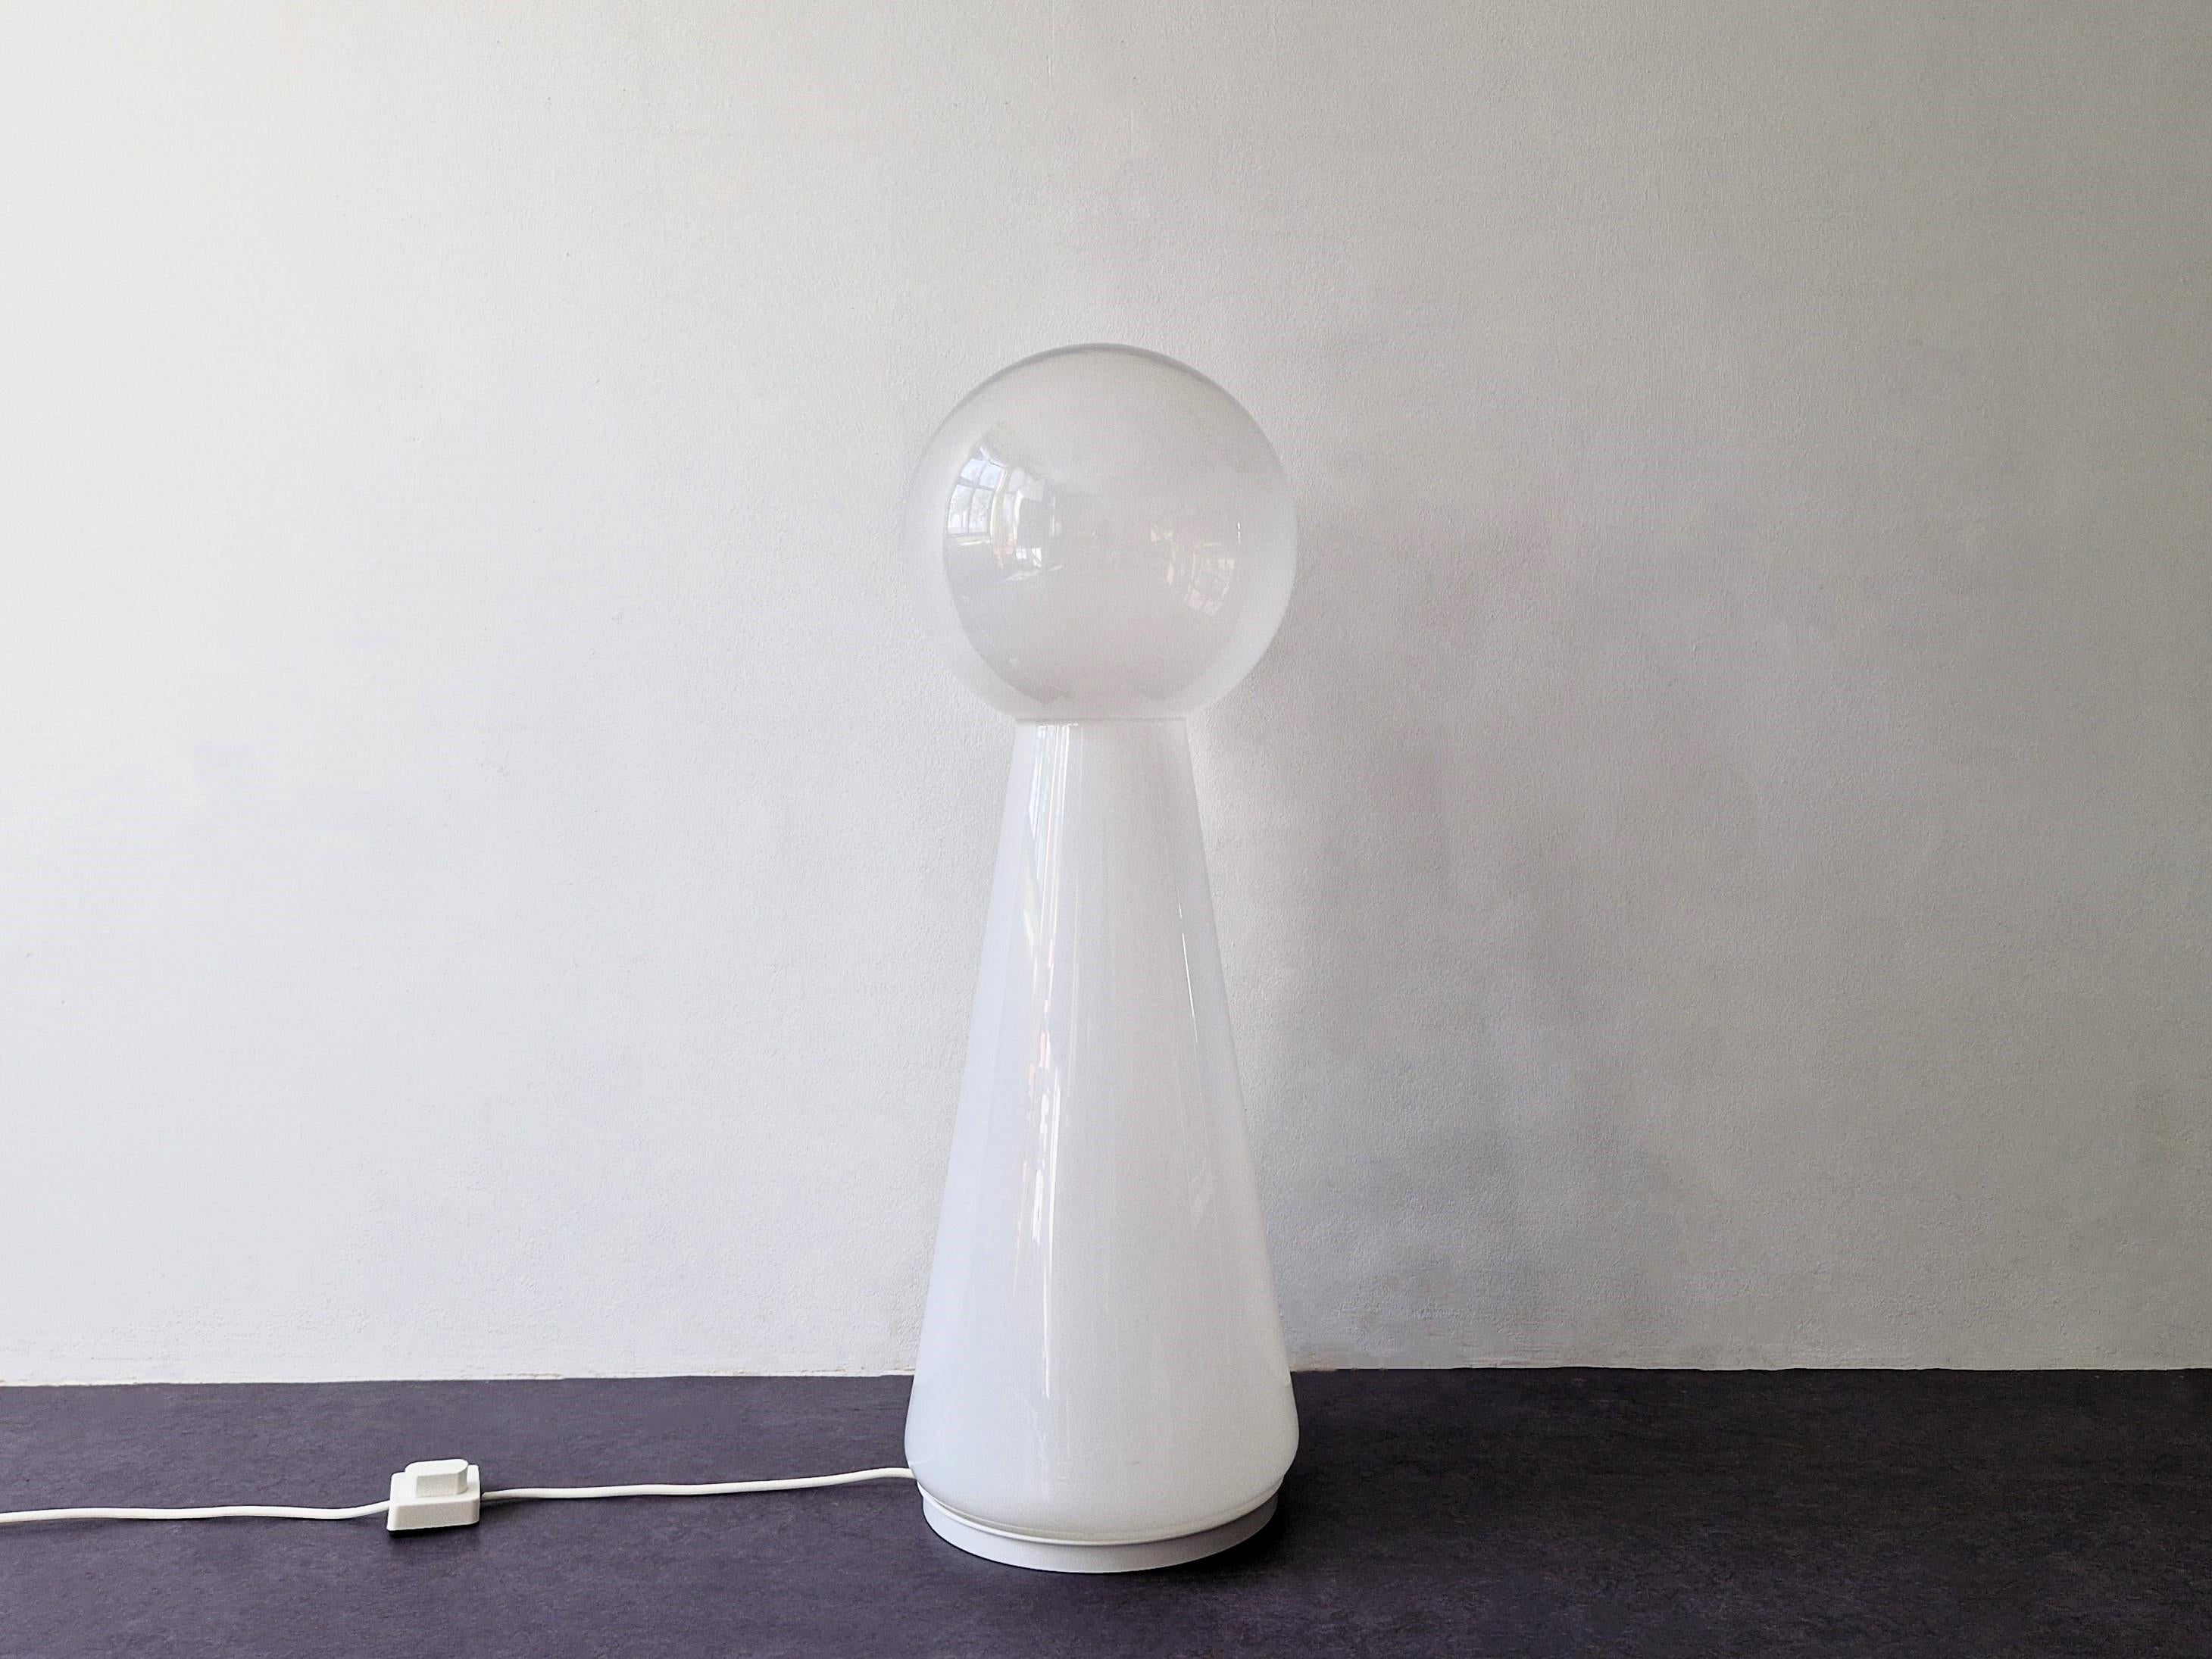 Cette magnifique lampe de forme géométrique est très probablement italienne et fabriquée/soufflée à la main en verre de Murano. La lampe passe d'une base en verre opale blanc à une boule en verre clair au sommet, le tout en une seule pièce.